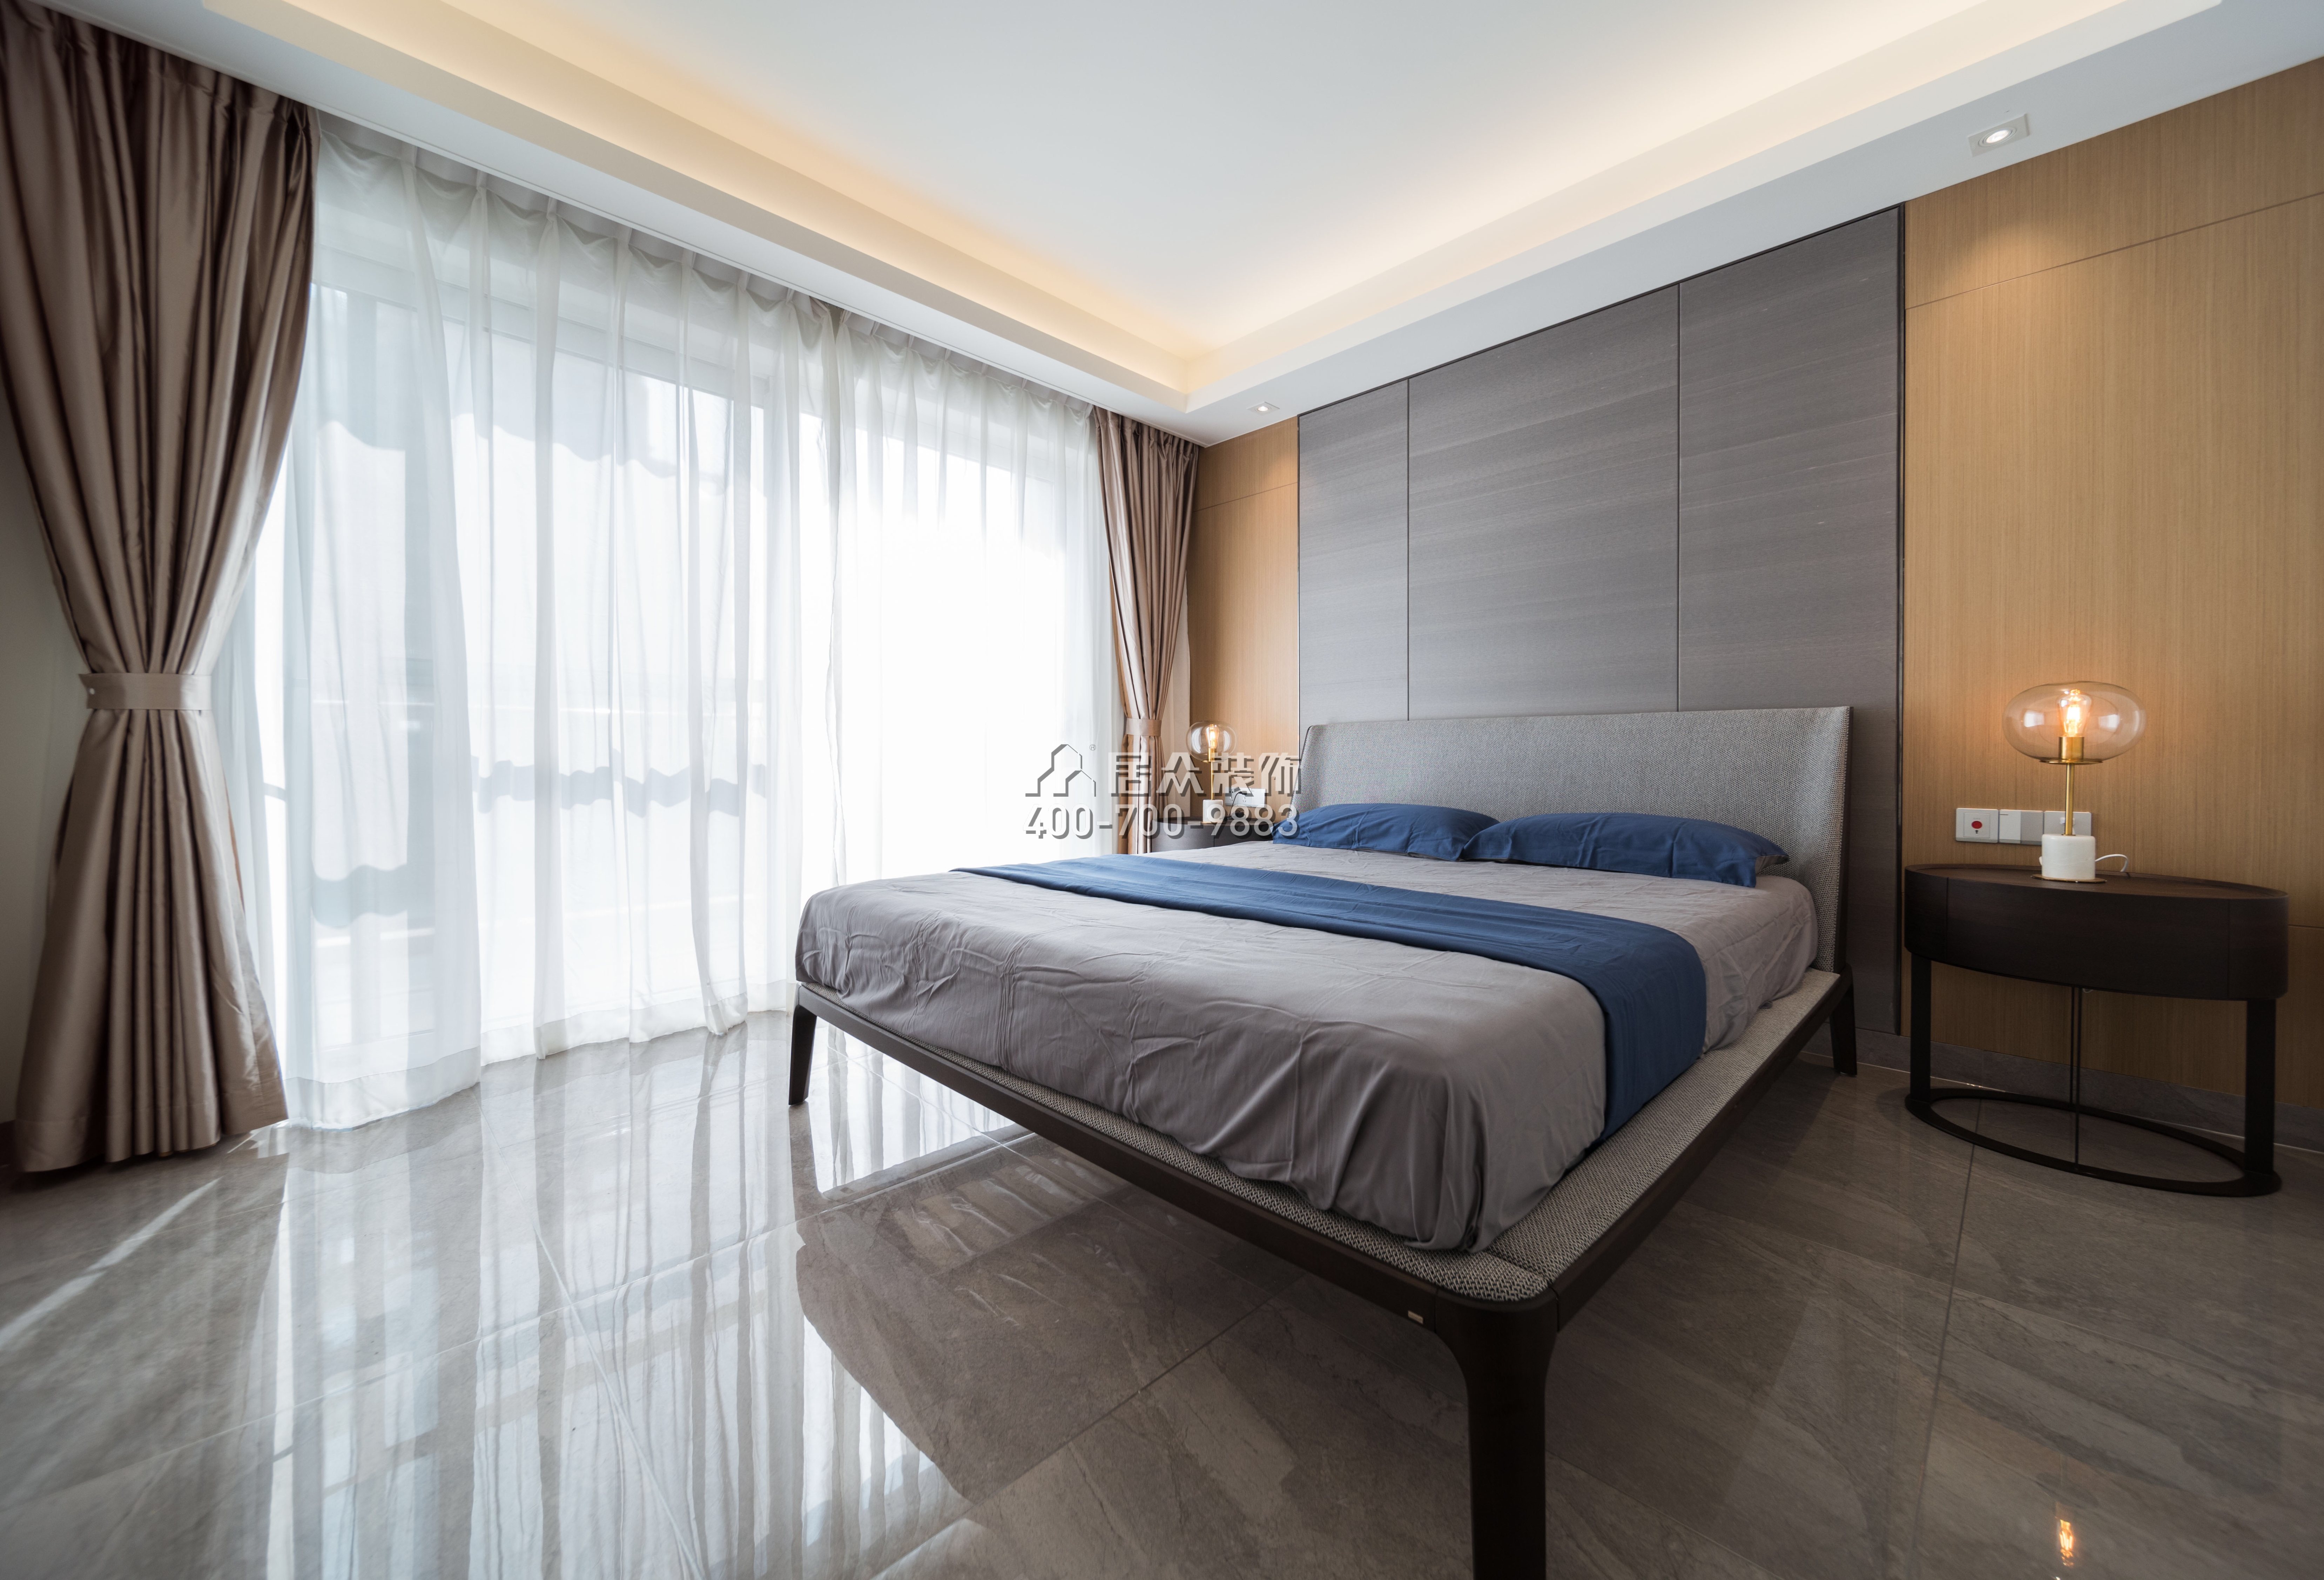 三湘海尚花園一期173平方米現代簡約風格平層戶型臥室裝修效果圖